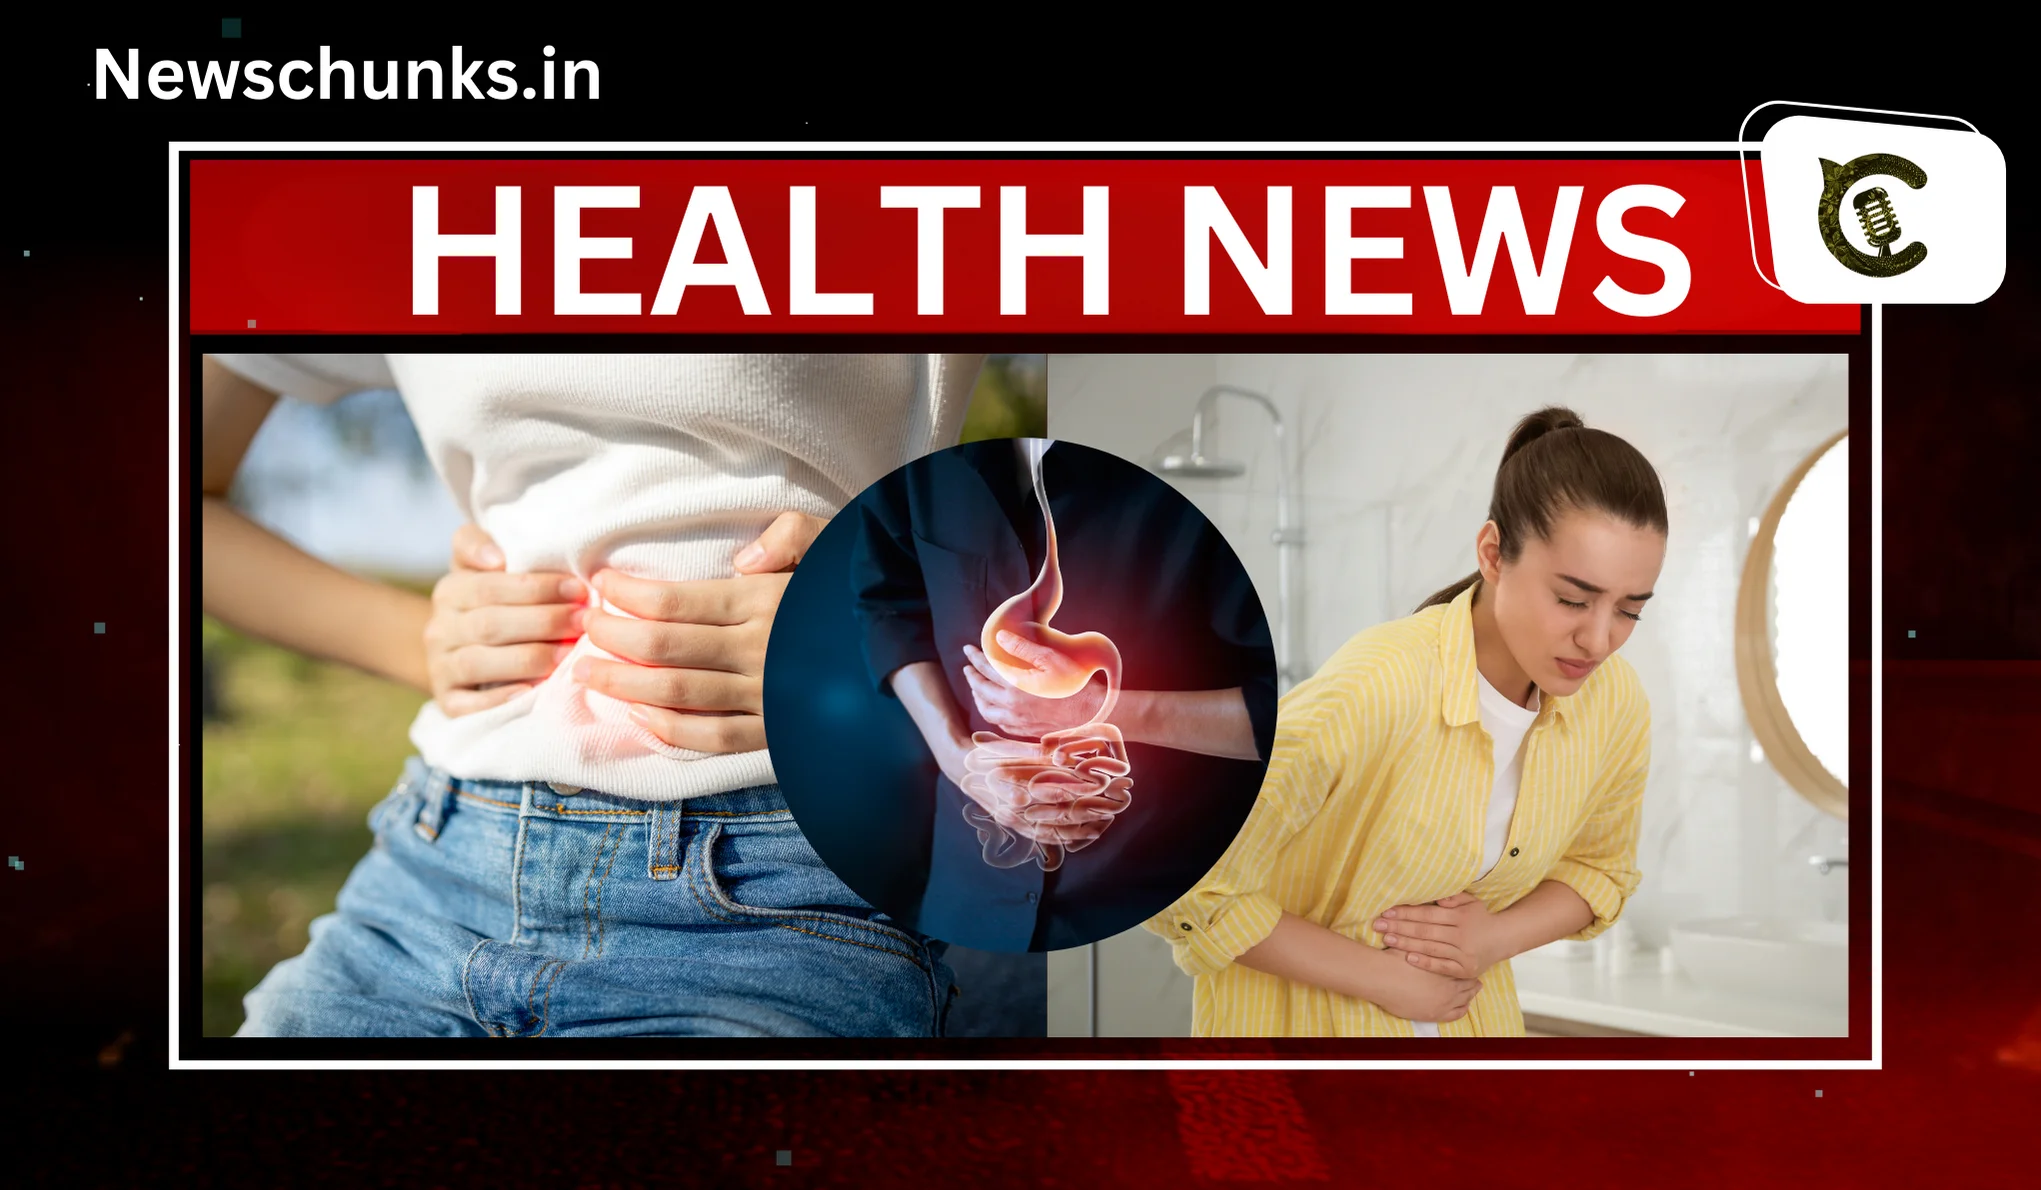 causes of stomach flu in Hindi: क्या है ठंड का स्टमक फ्लू से कनेक्शन? जानें स्टमक फ़्लू का कारण और बचाव के उपाय